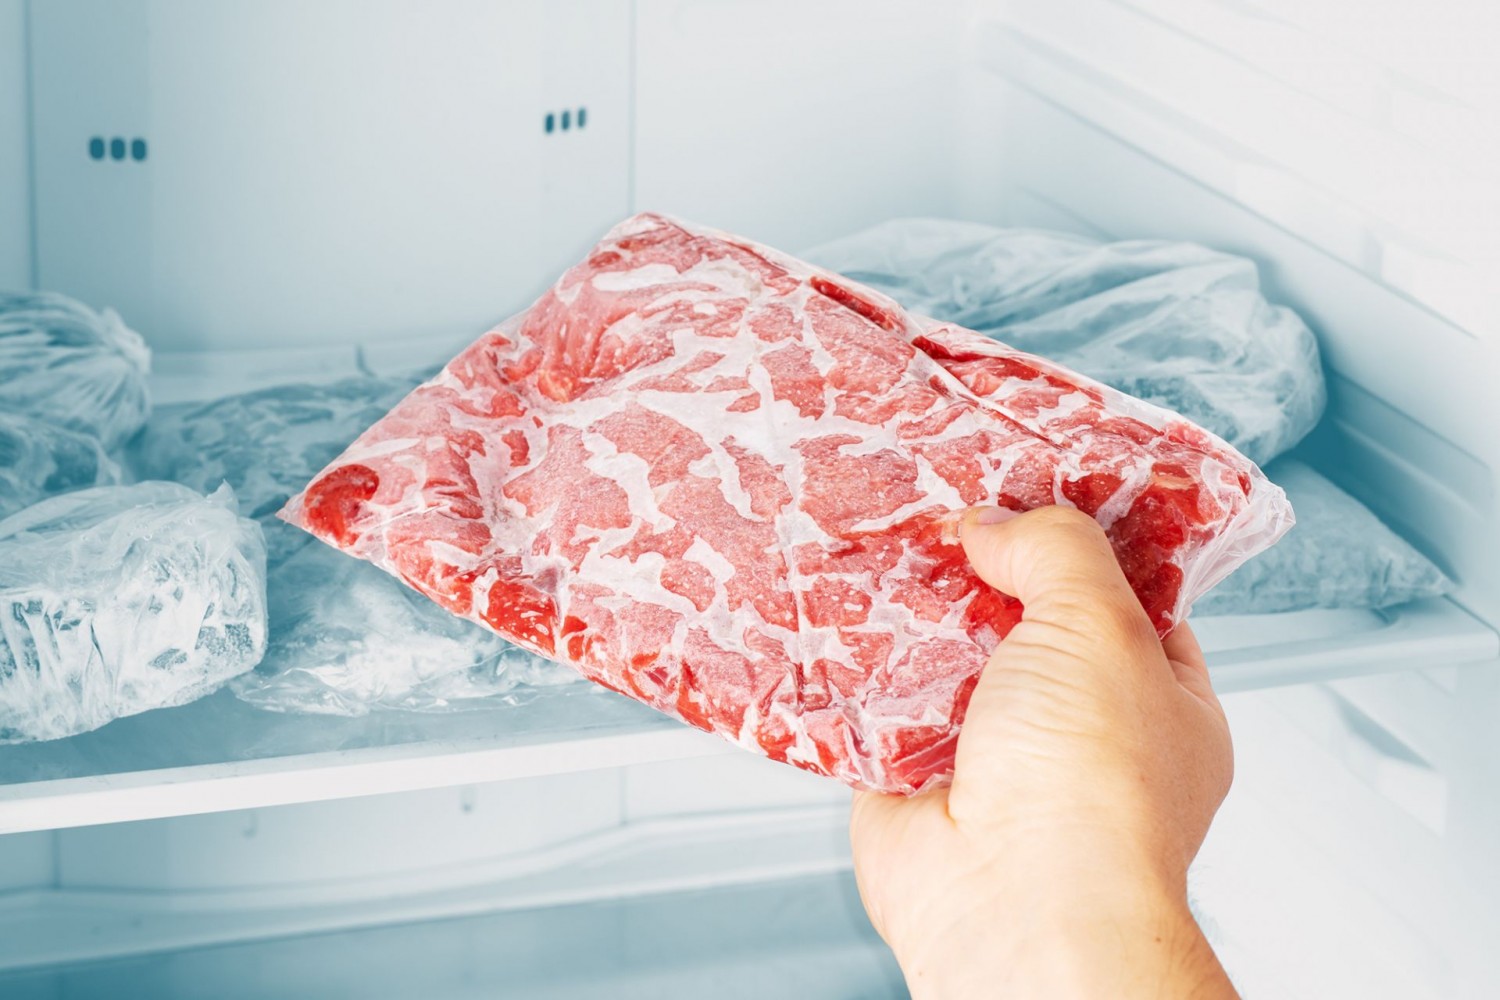 A szakácsok titka: hogyan olvasszuk ki a húst 5 perc alatt?